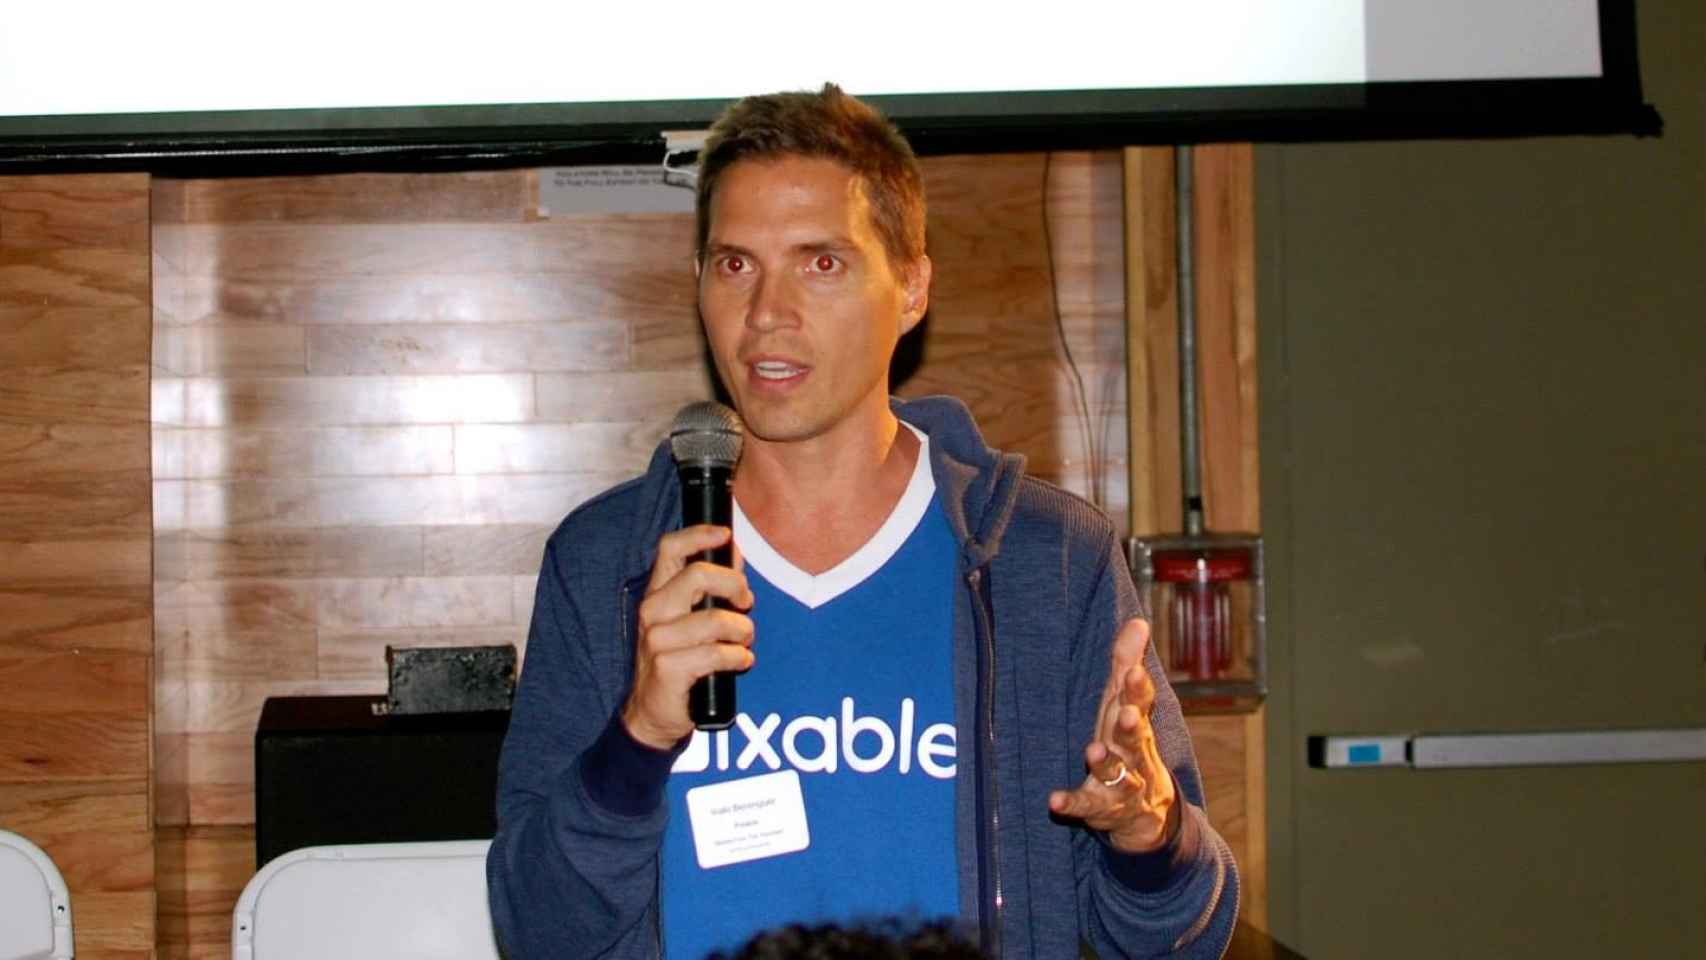 Iñaki Berenguer, durante una presentación de Pixable, en una imagen de archivo